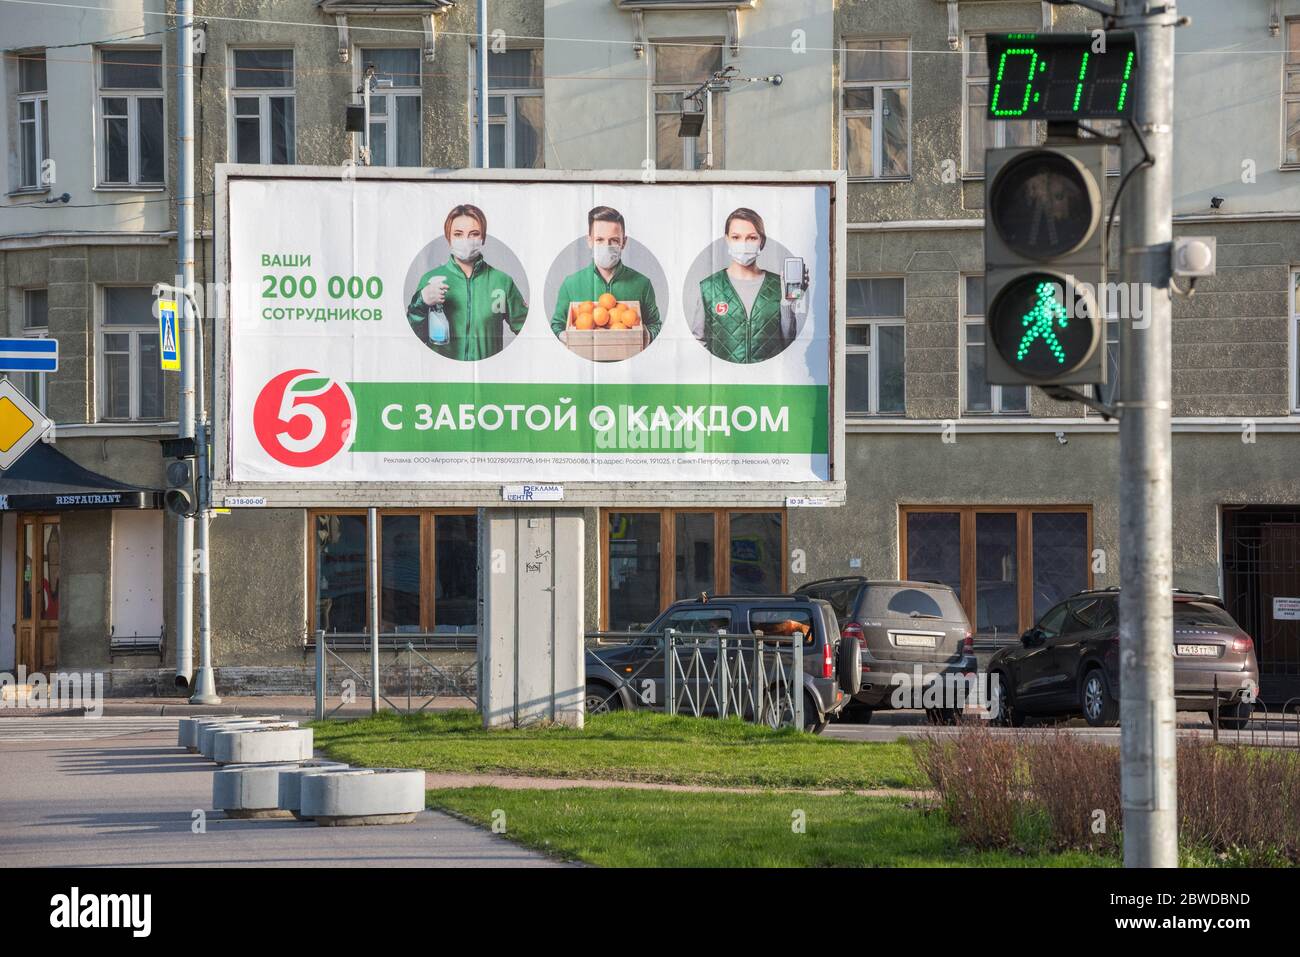 St. Petersburg, Russland - 2. Mai 2020: Eine Anzeige einer Convenience-Store-Kette Pyaterochka zeigt Mitarbeiter in Masken & einen Slogan Taking Care of Everyone. Stockfoto